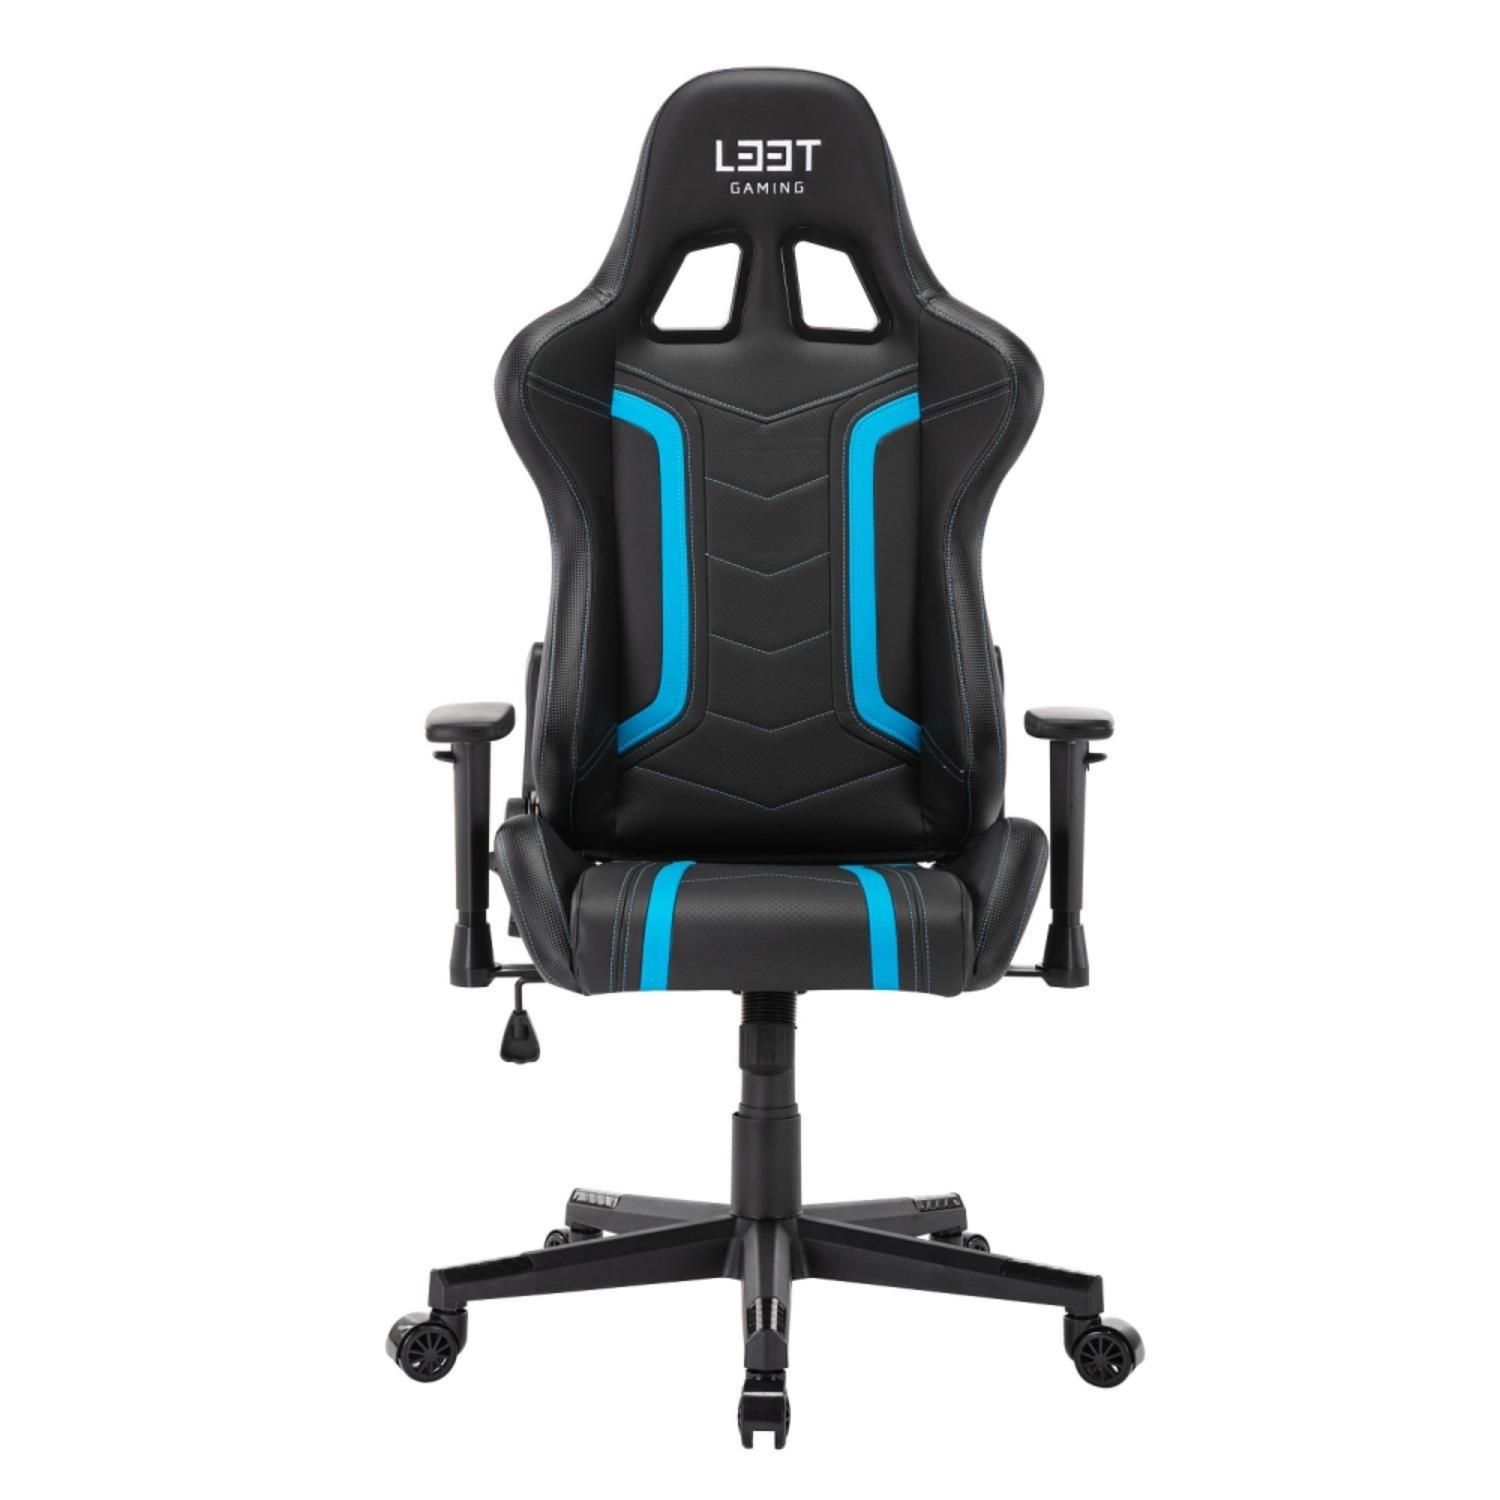 L33T 160365 blau Gaming Stuhl